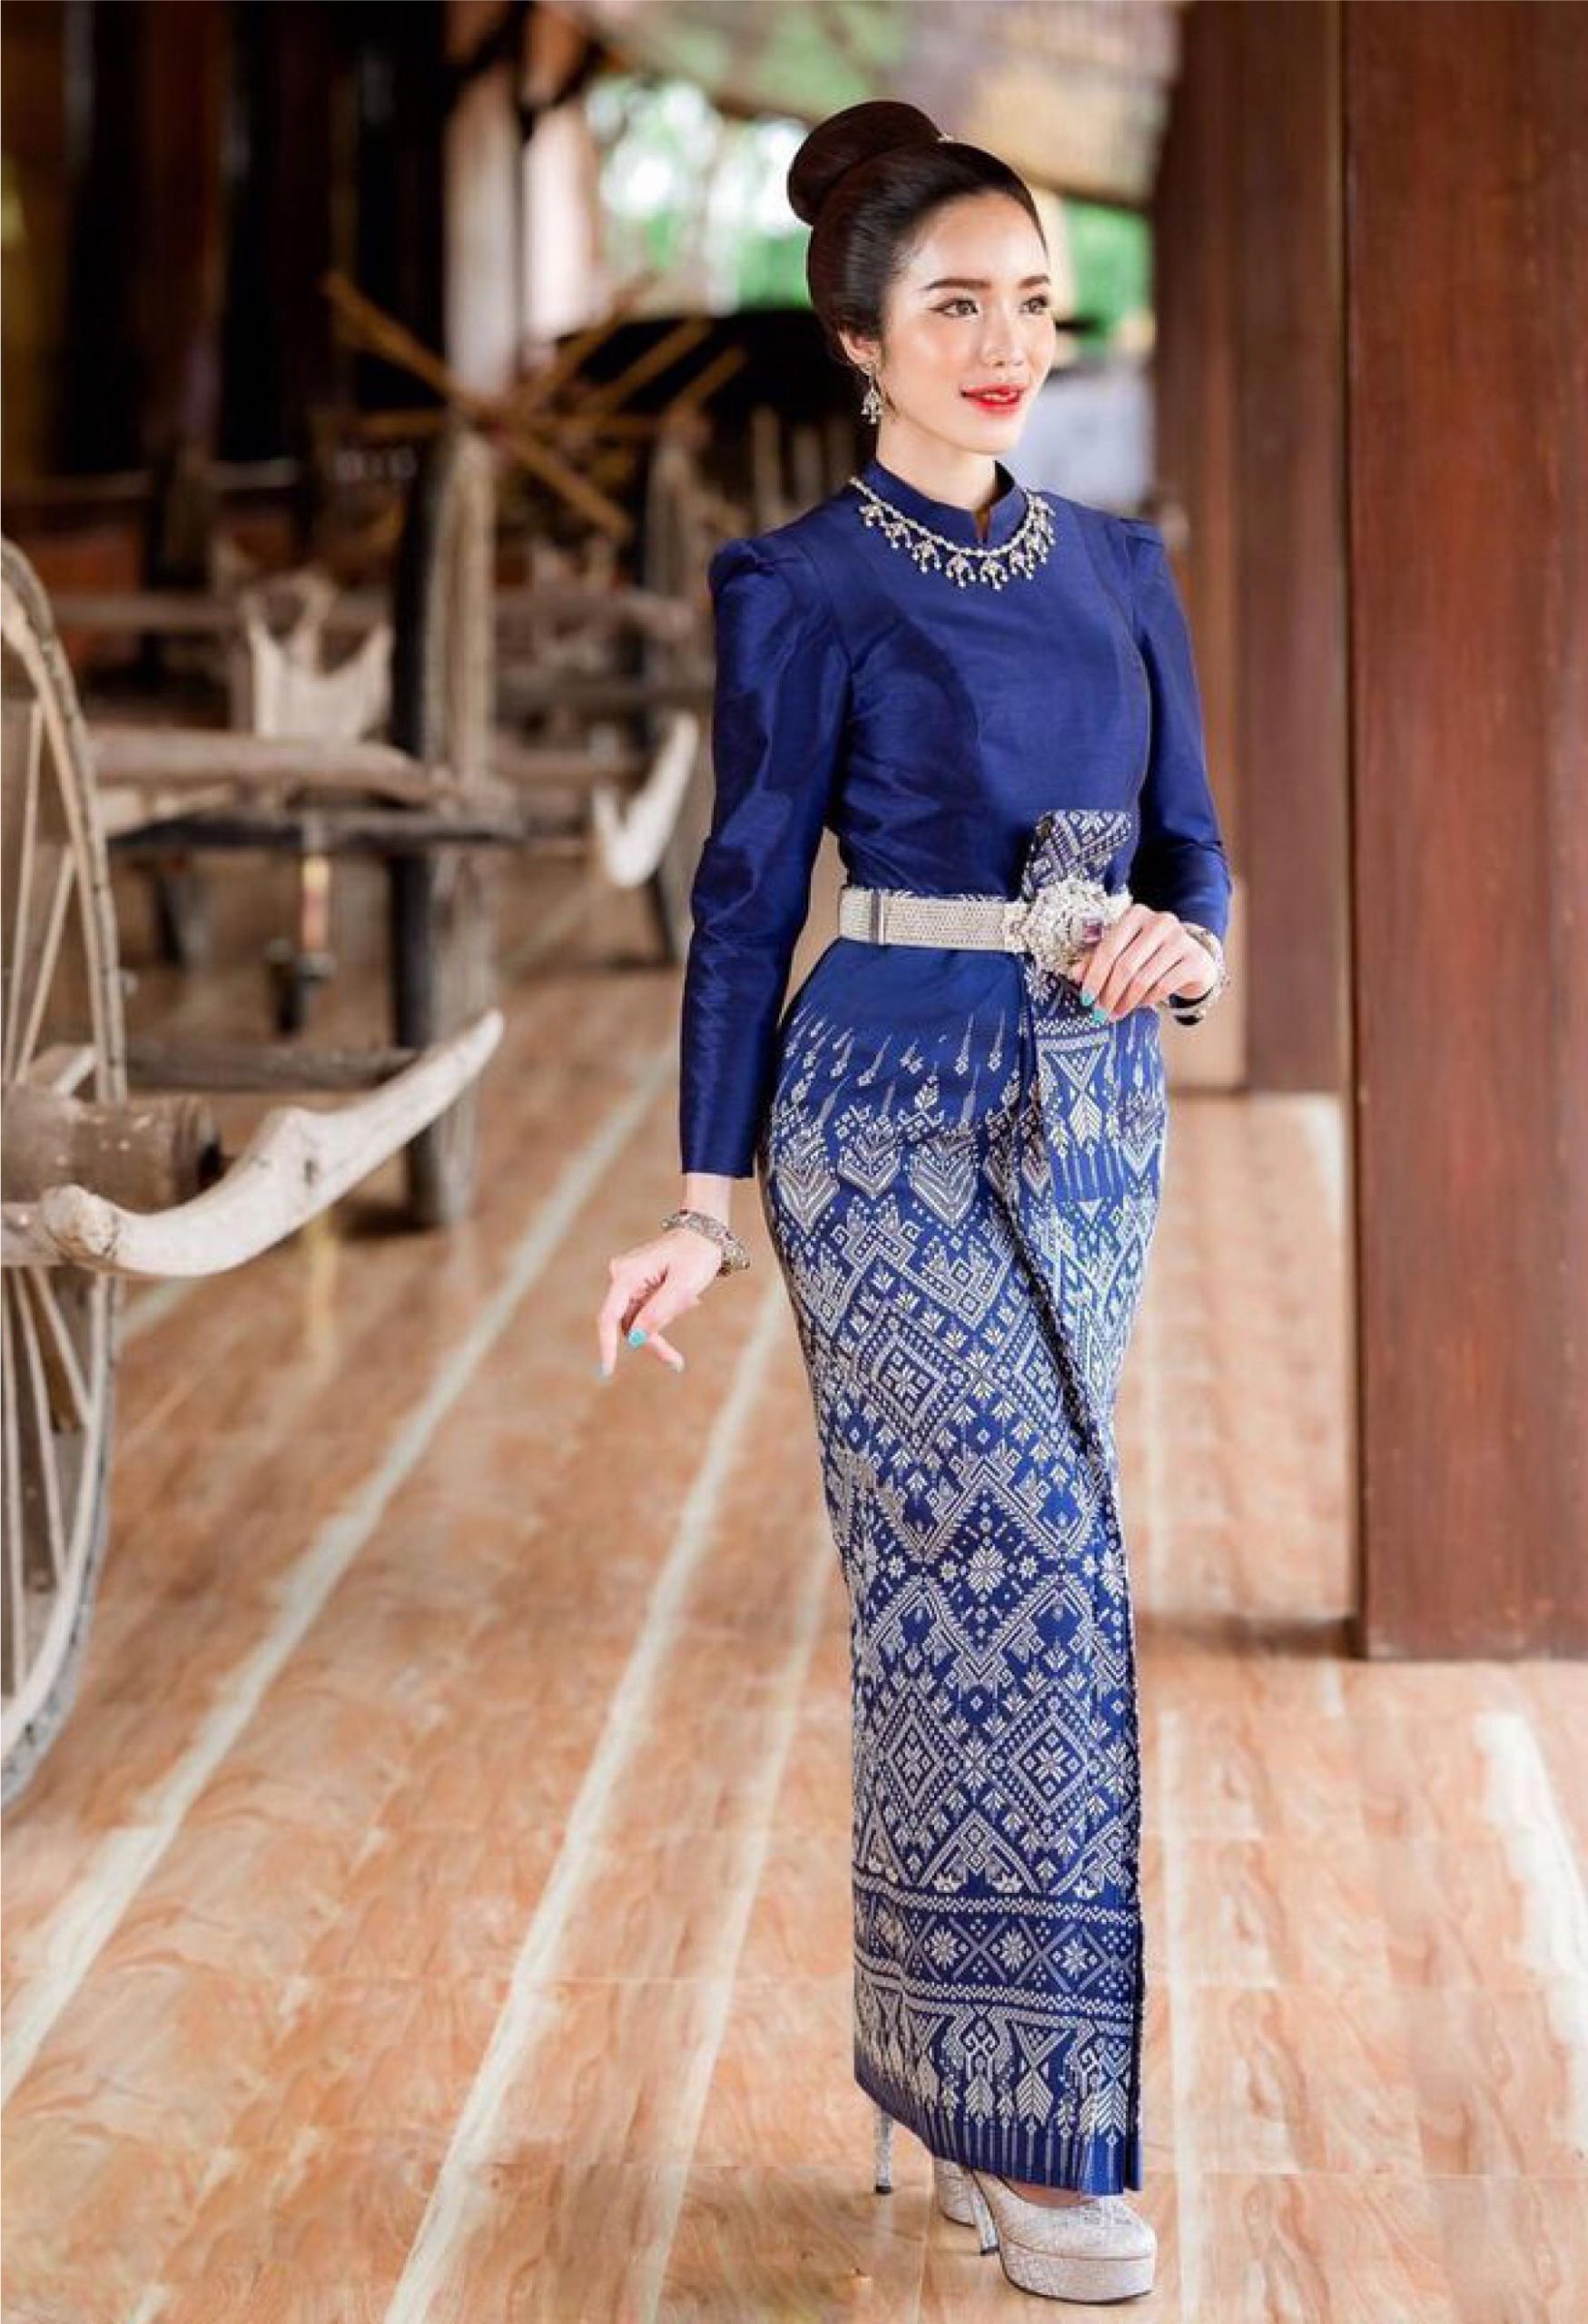 Chân Dung Người Phụ Nữ Nông Thôn Xinh Đẹp Thái Lan Mặc Váy Thái Lan Ở